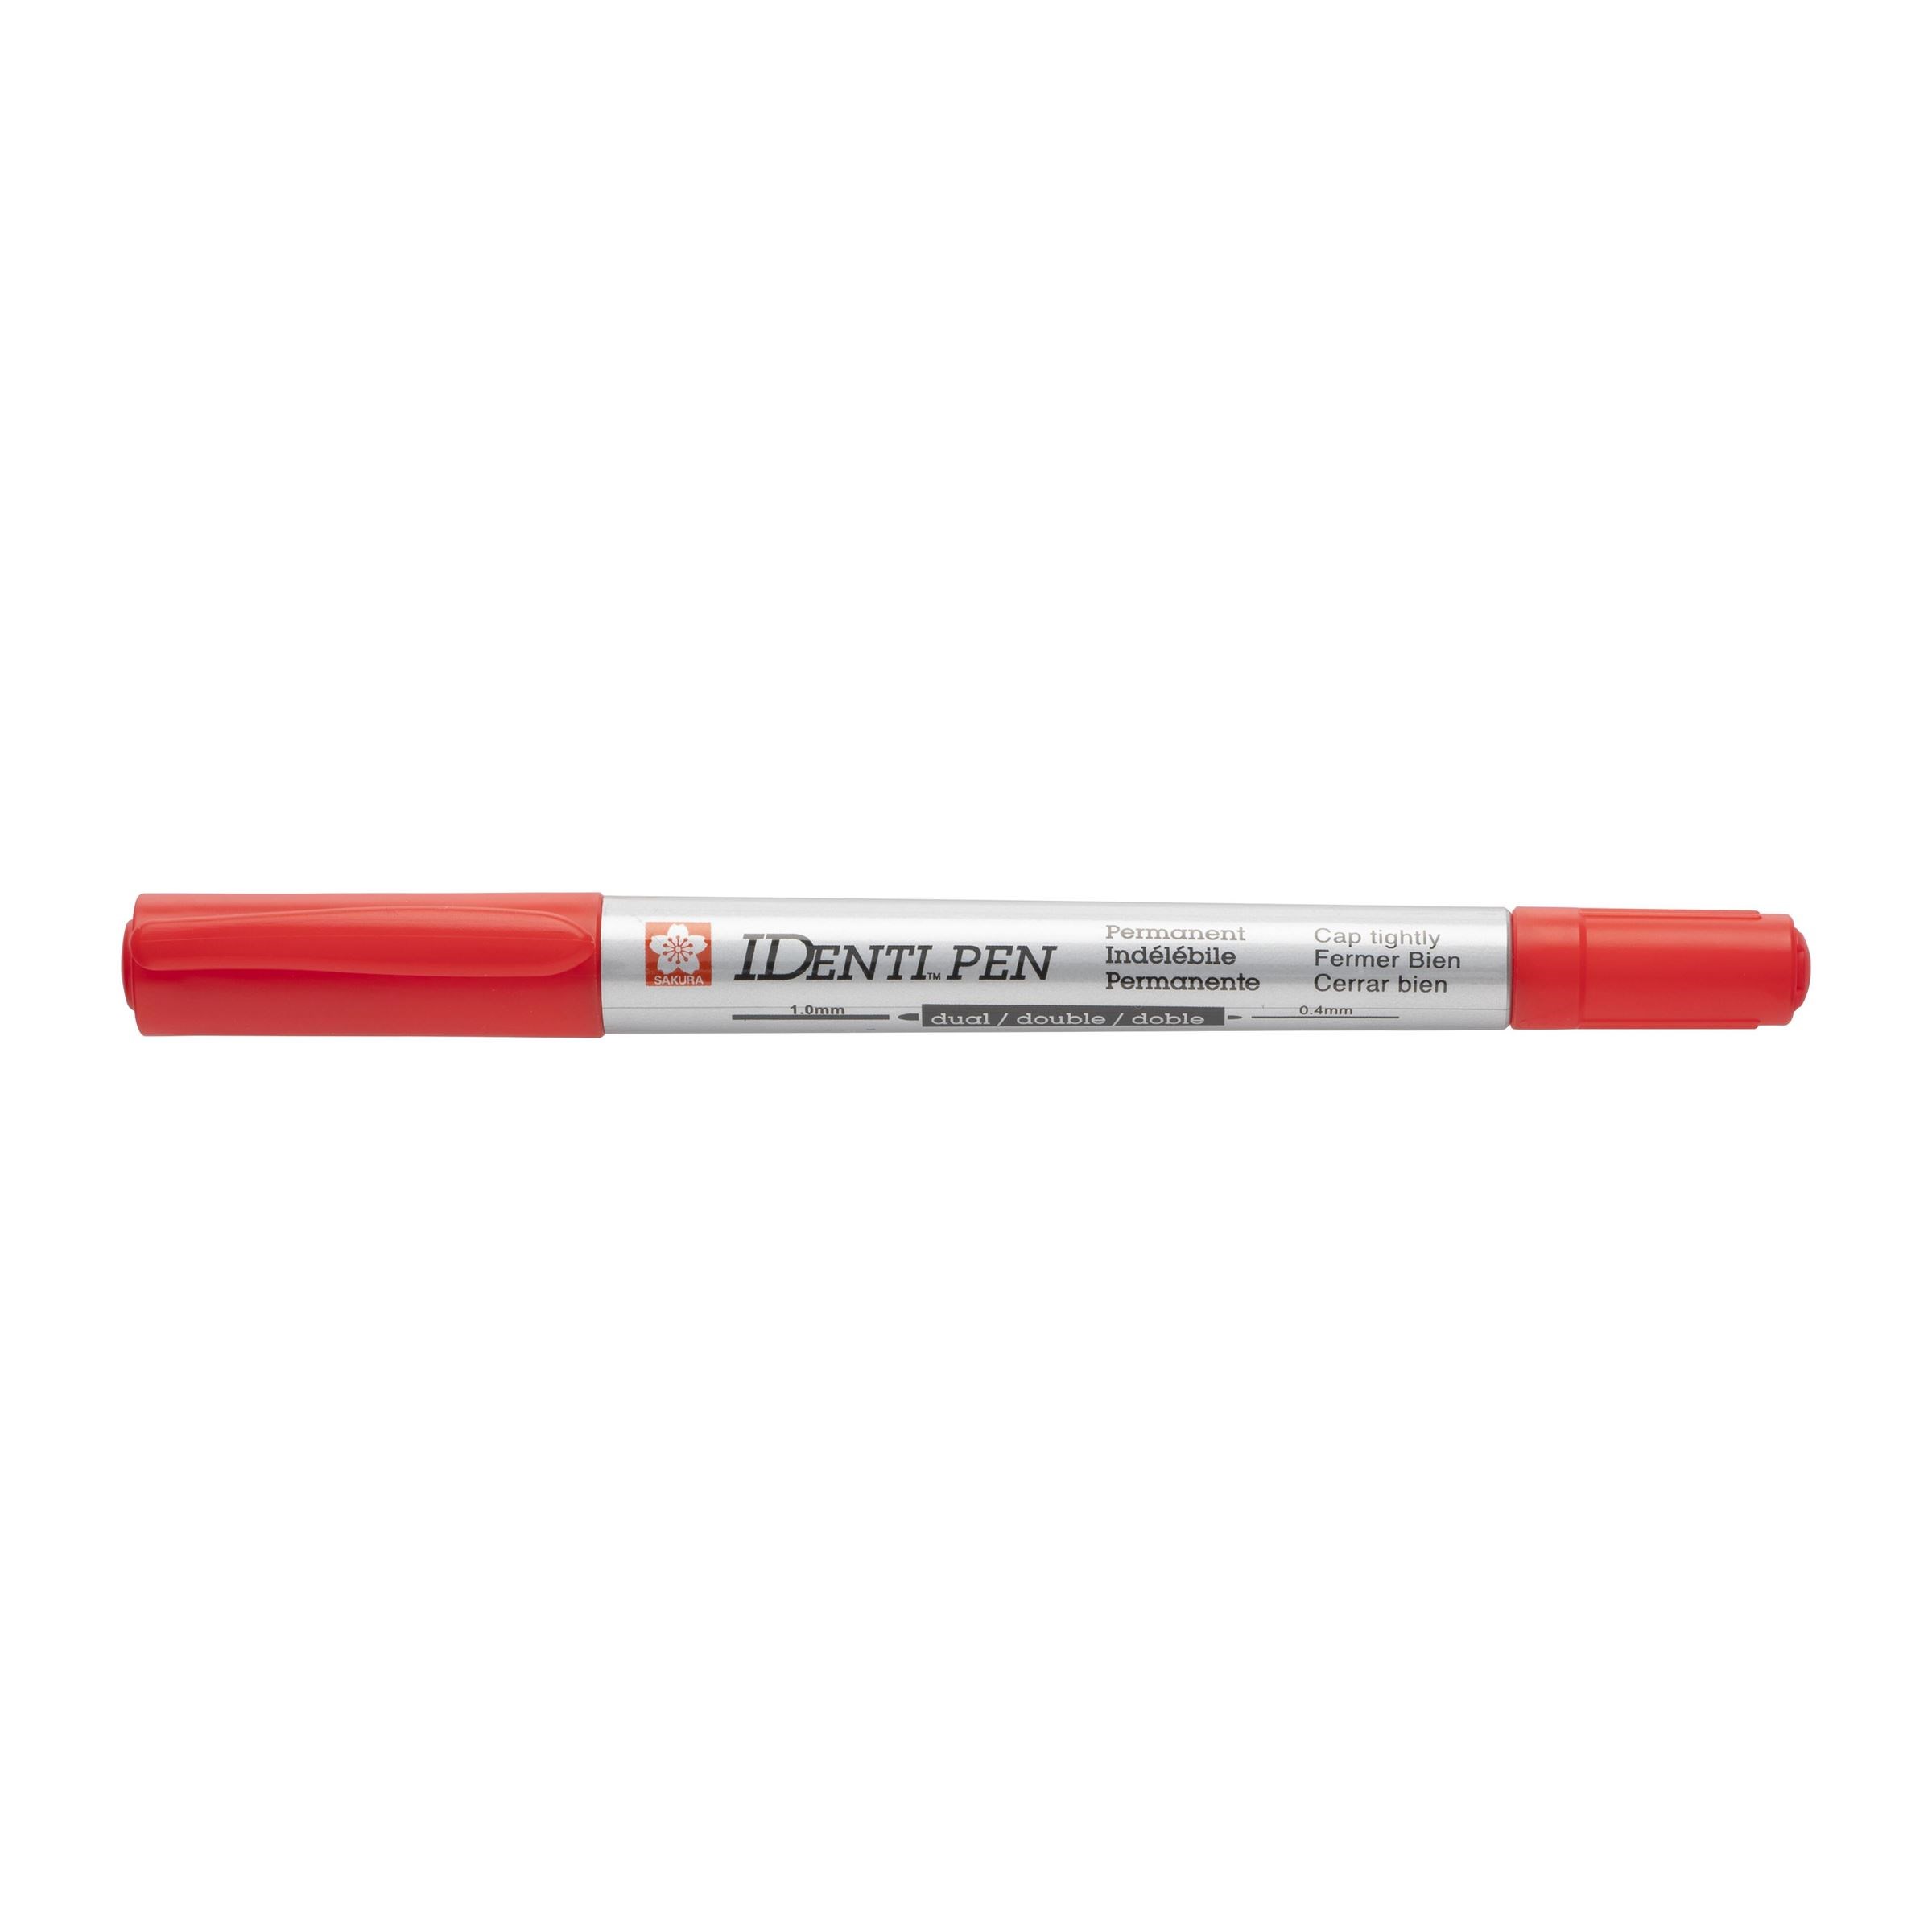 IDenti Pen Doppelspitze Permanentmarker 